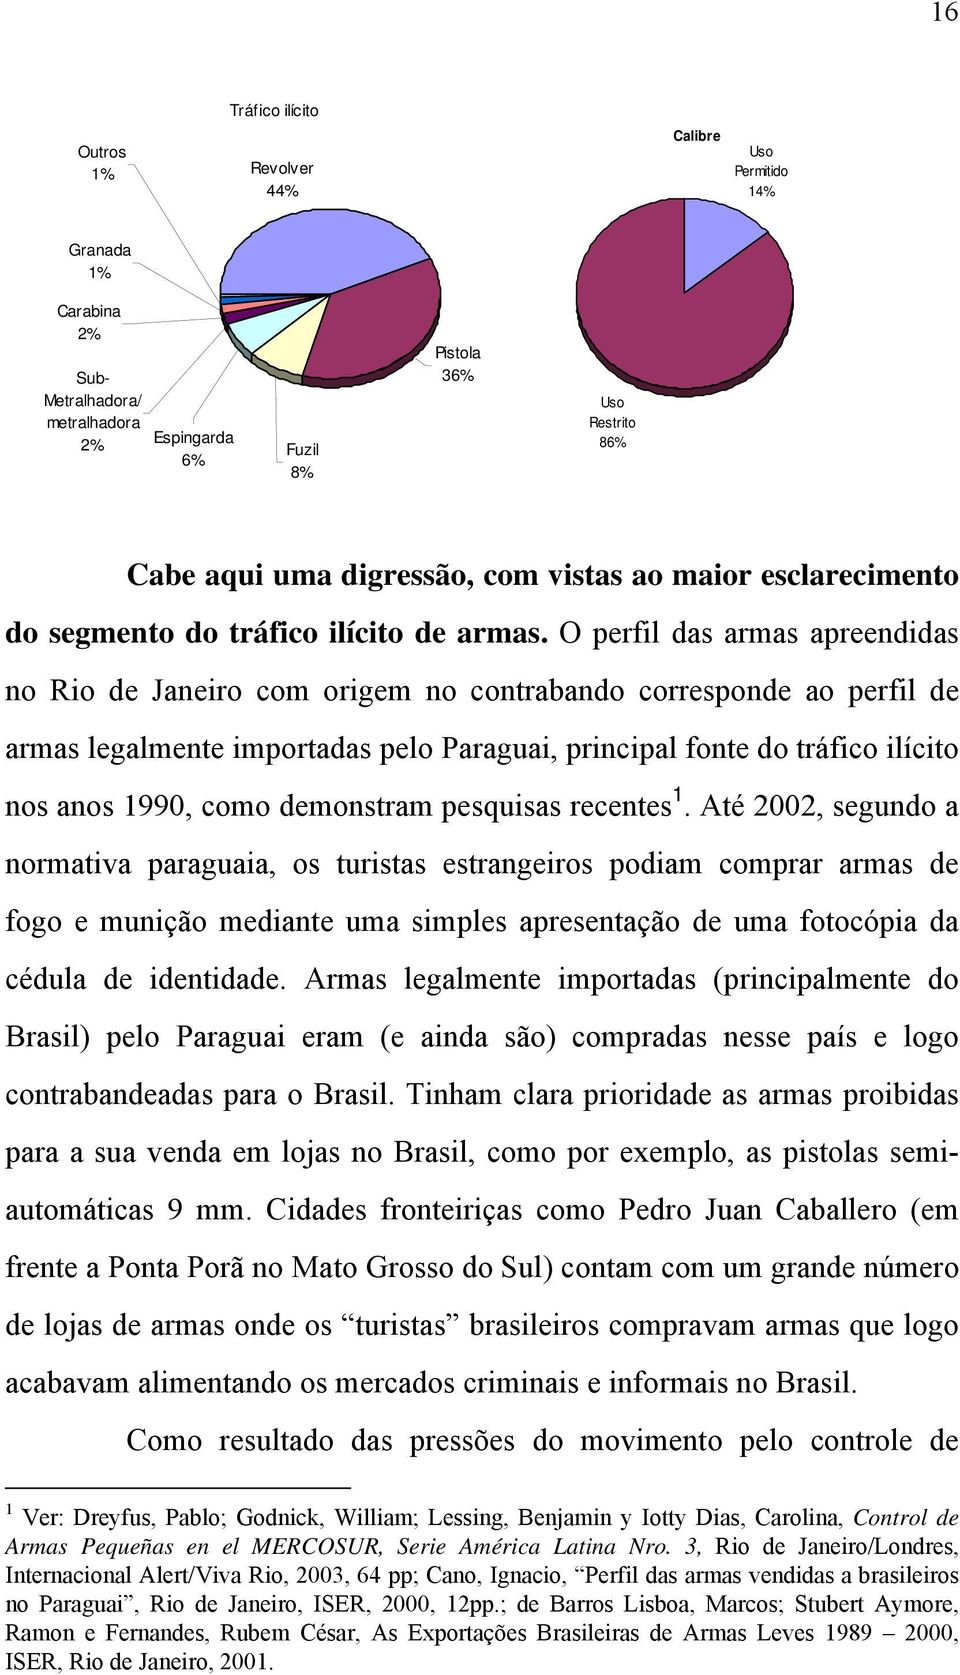 O perfil das armas apreendidas no Rio de Janeiro com origem no contrabando corresponde ao perfil de armas legalmente importadas pelo Paraguai, principal fonte do tráfico ilícito nos anos 1990, como